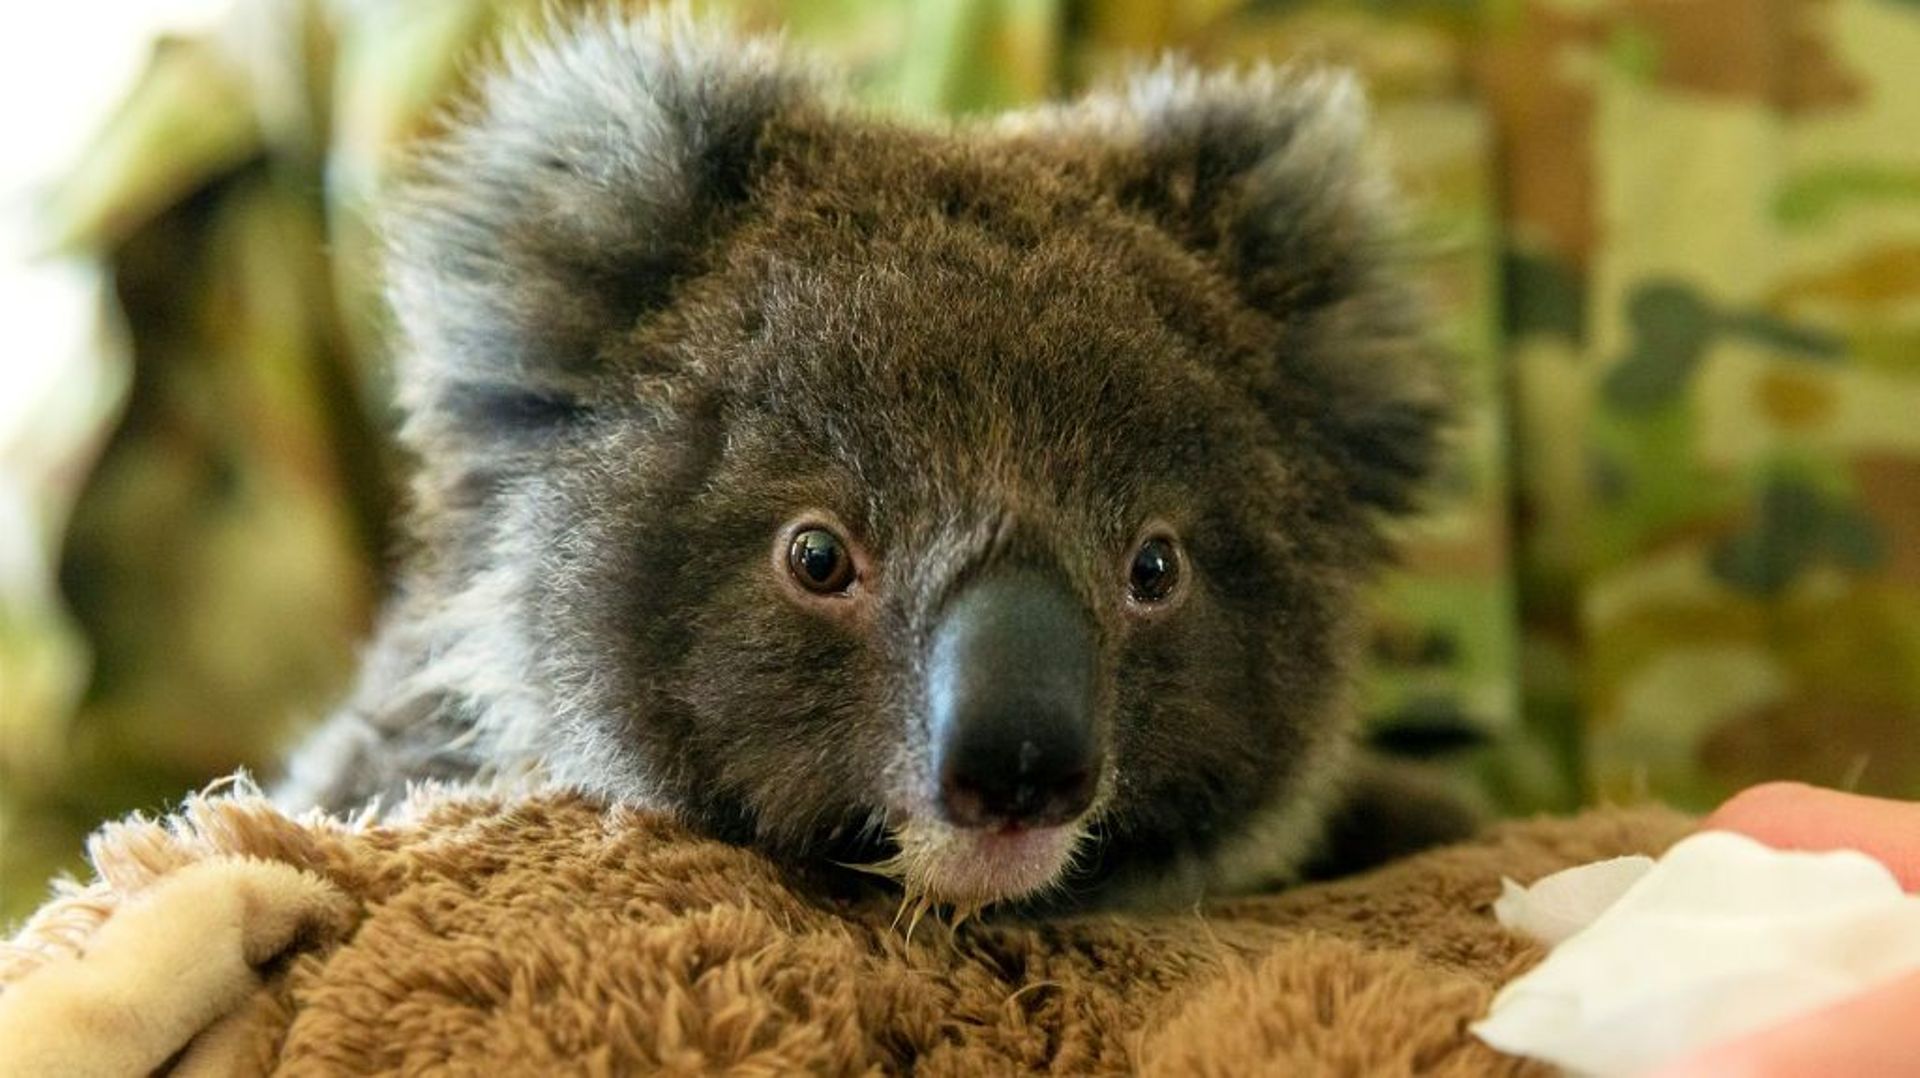 Les koalas sont classifiés comme "vulnérables" et ont récemment souffert d'une perte massive de leur habitant en raison des feux de forêt